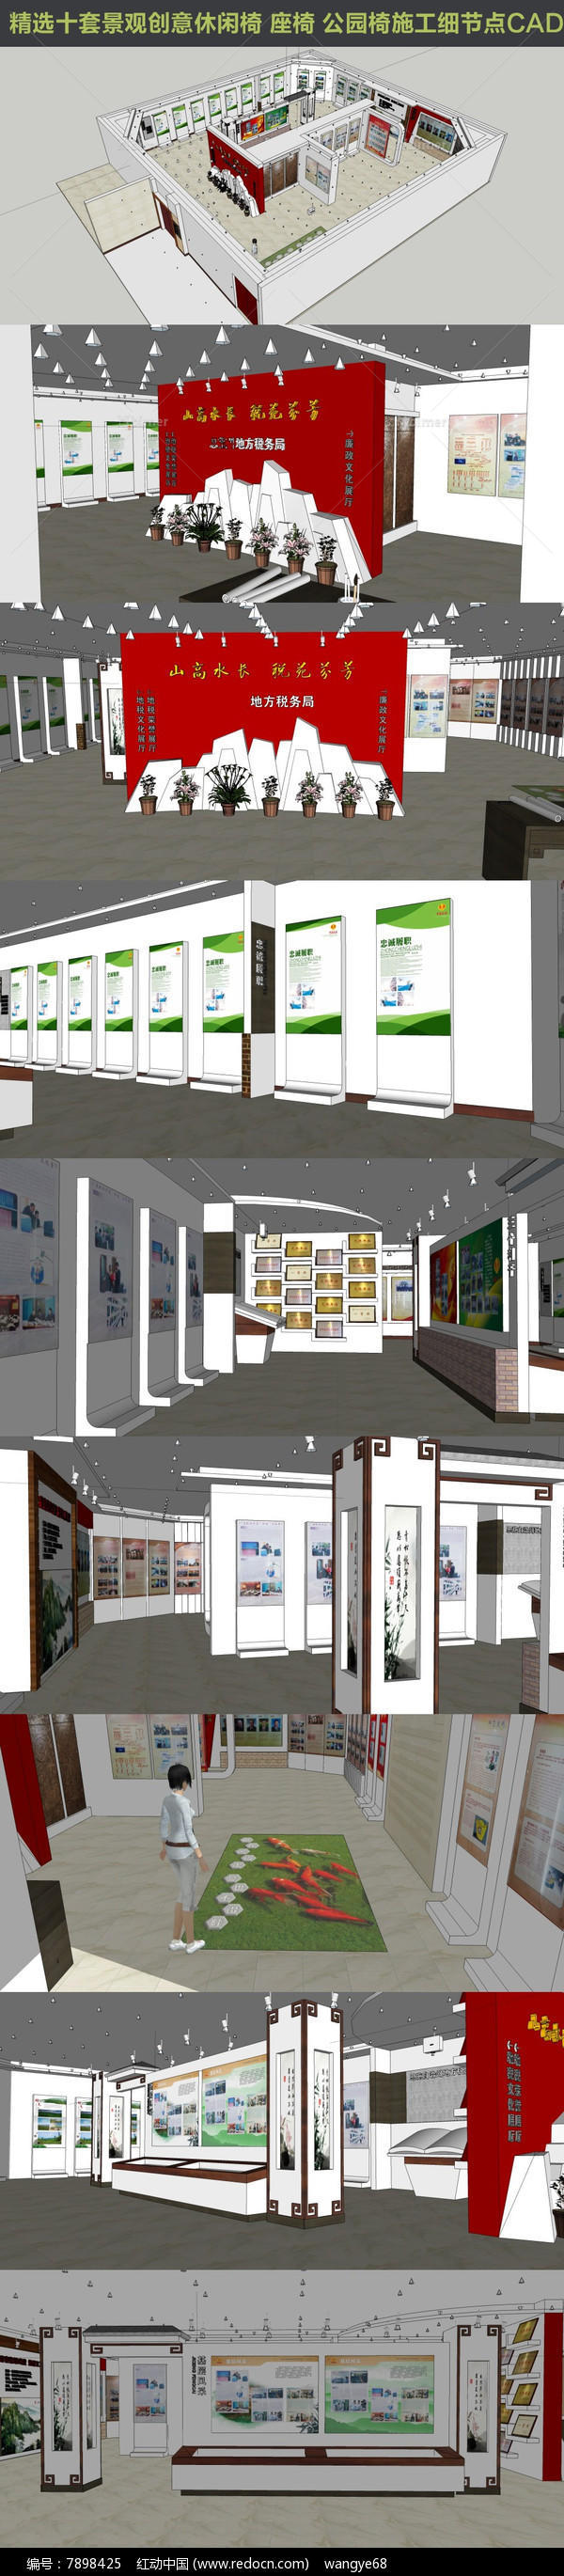 一套完整税务文化大展厅形象墙SU模型